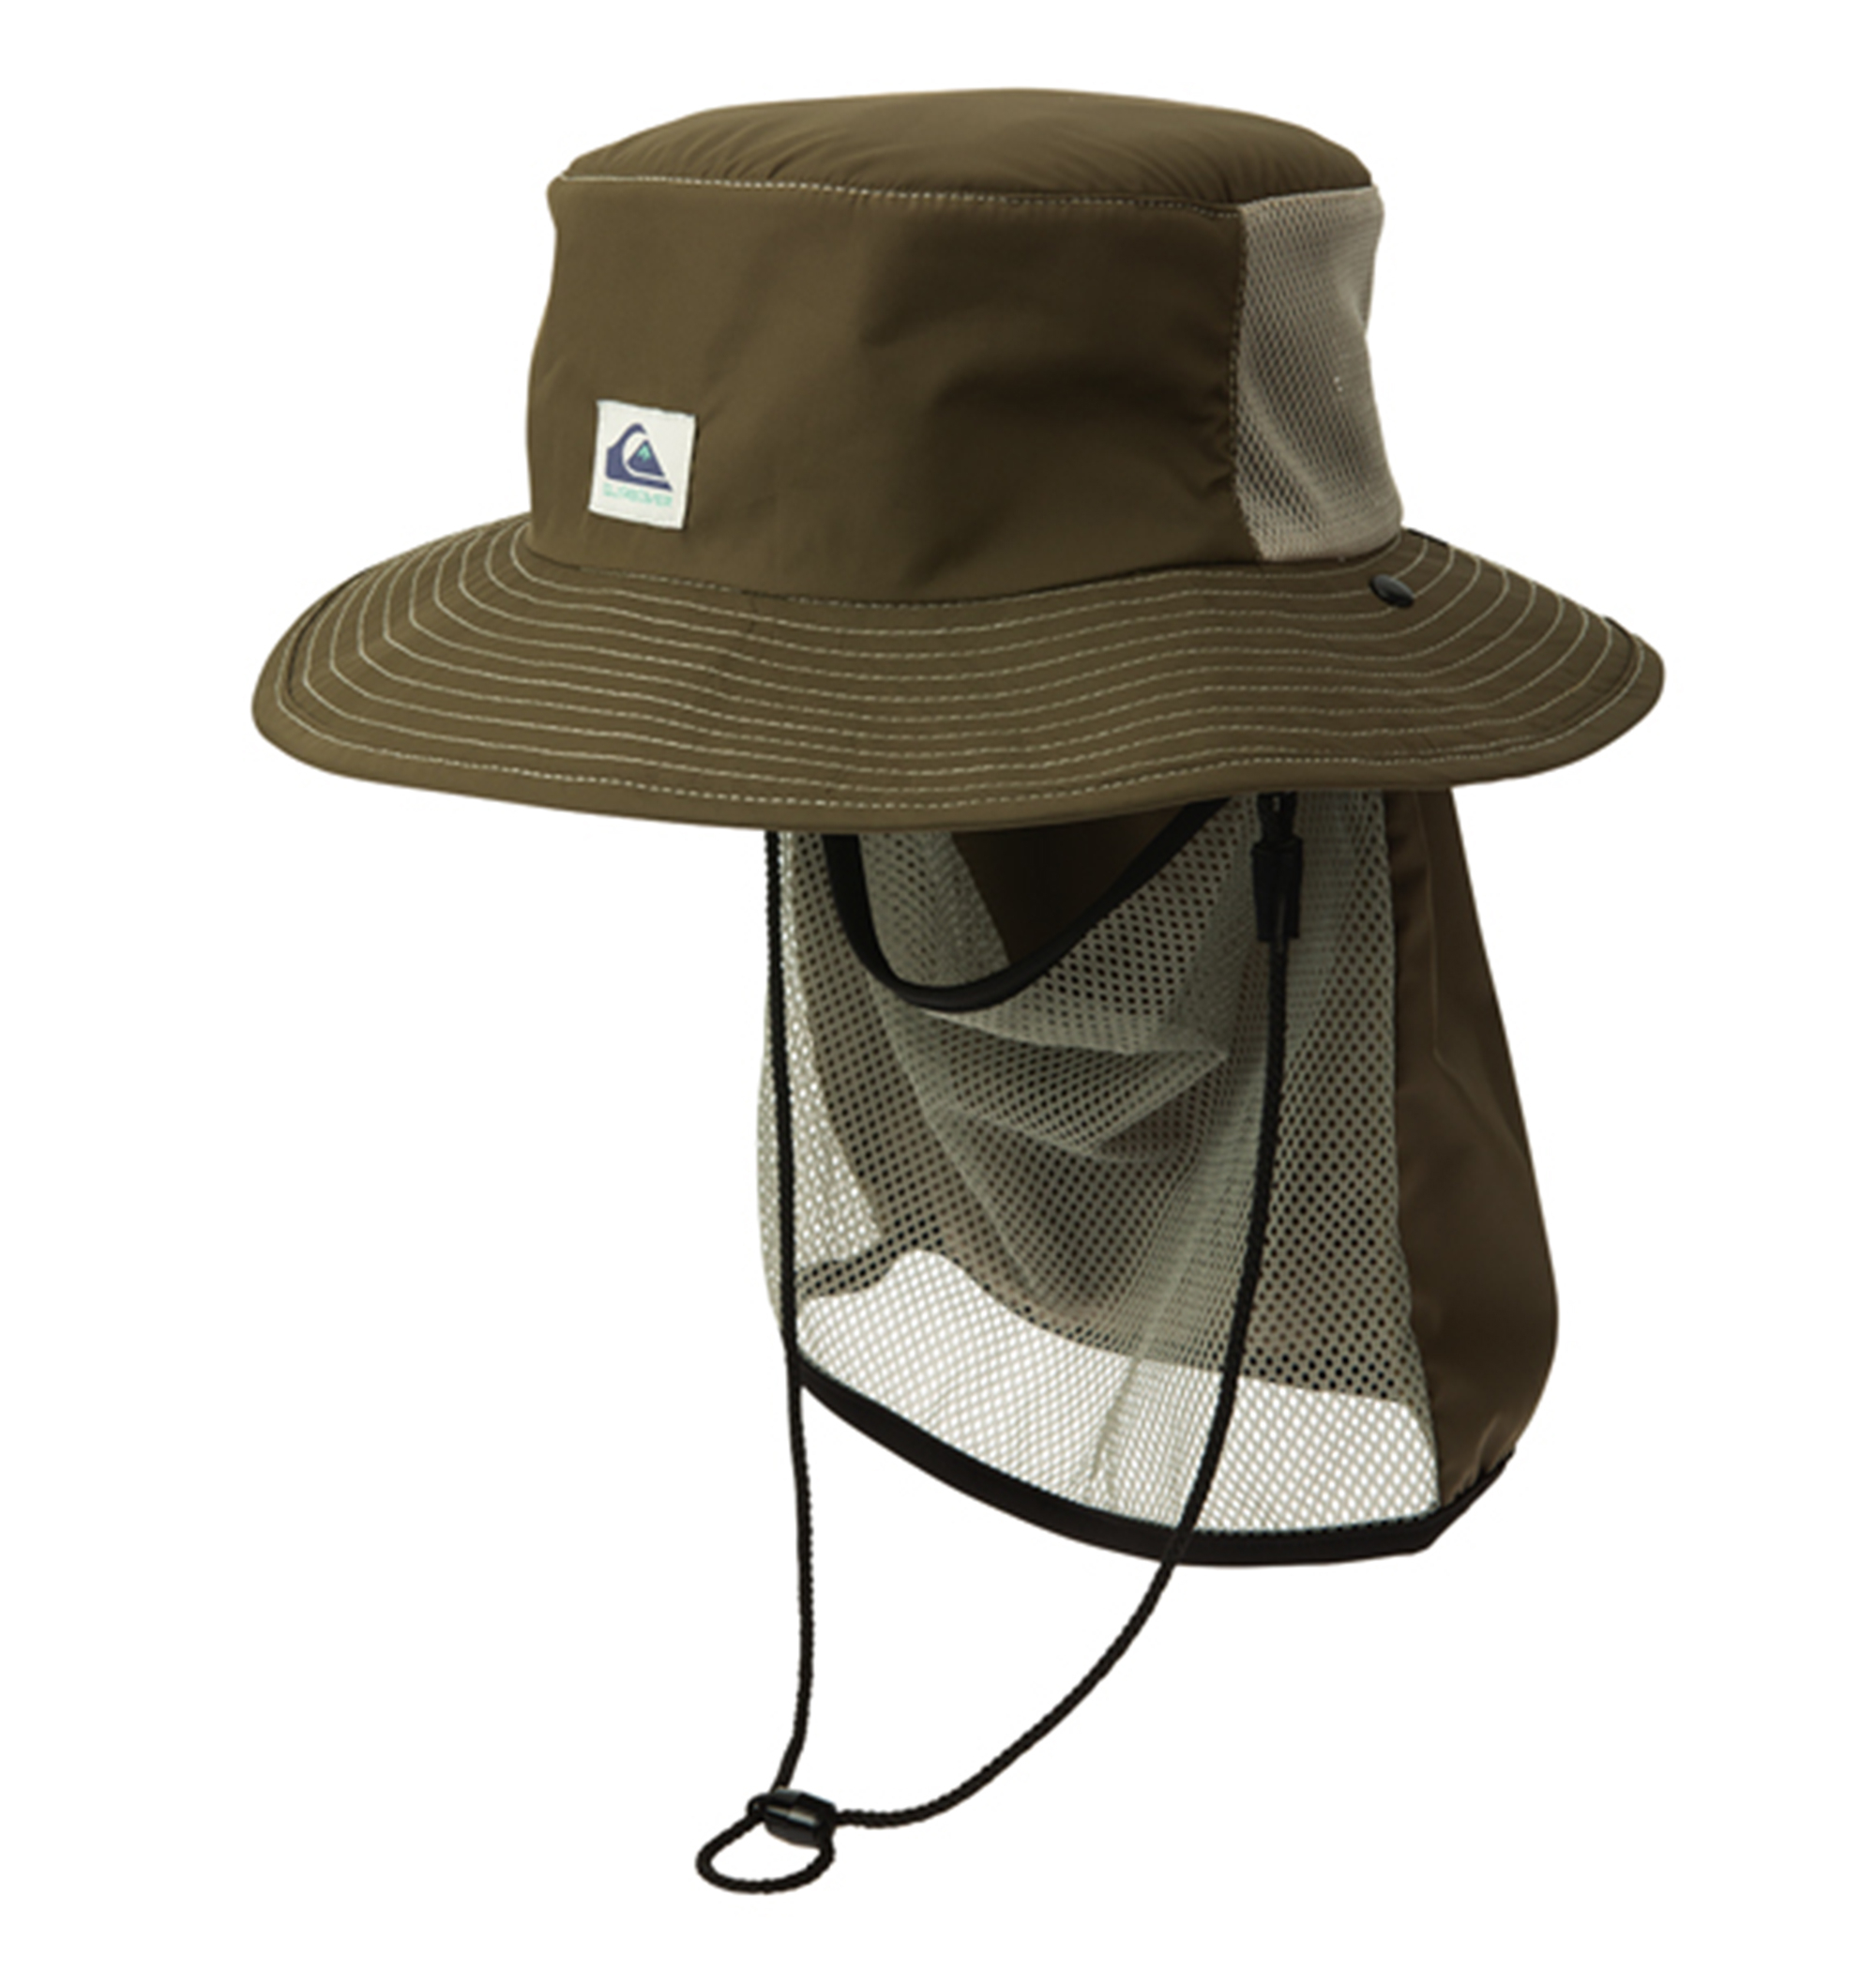 UV SUP CAMP HAT ポリエステル100% UV CUT (UPF50+) 撥水加工素材の日焼け防止SUPキャンプハットの大画像